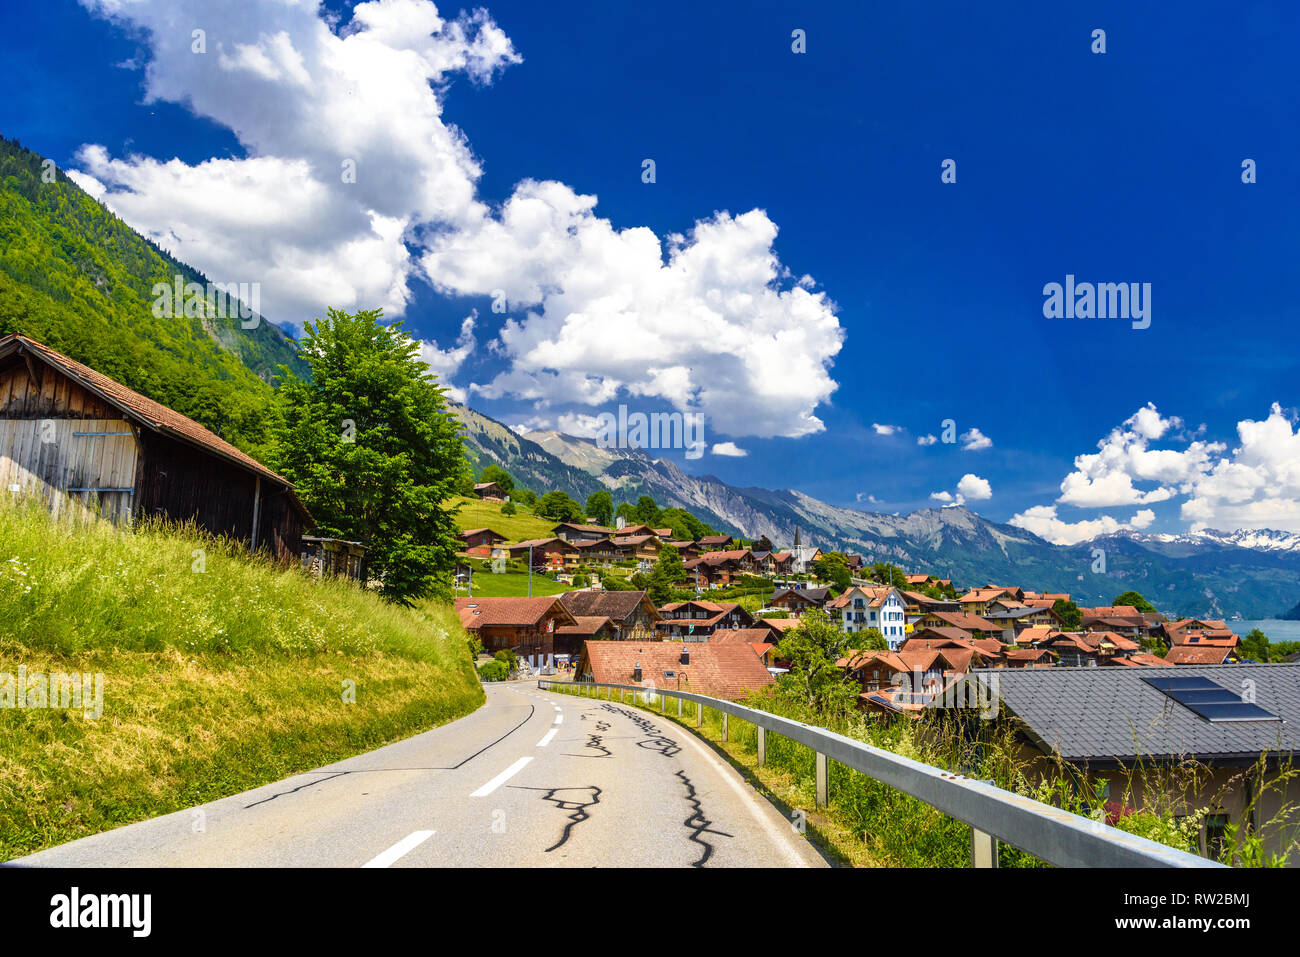 Road in the village, Lake Brienz, Oberried am Brienzersee, Interlaken-Oberhasli, Bern, Switzerland Stock Photo